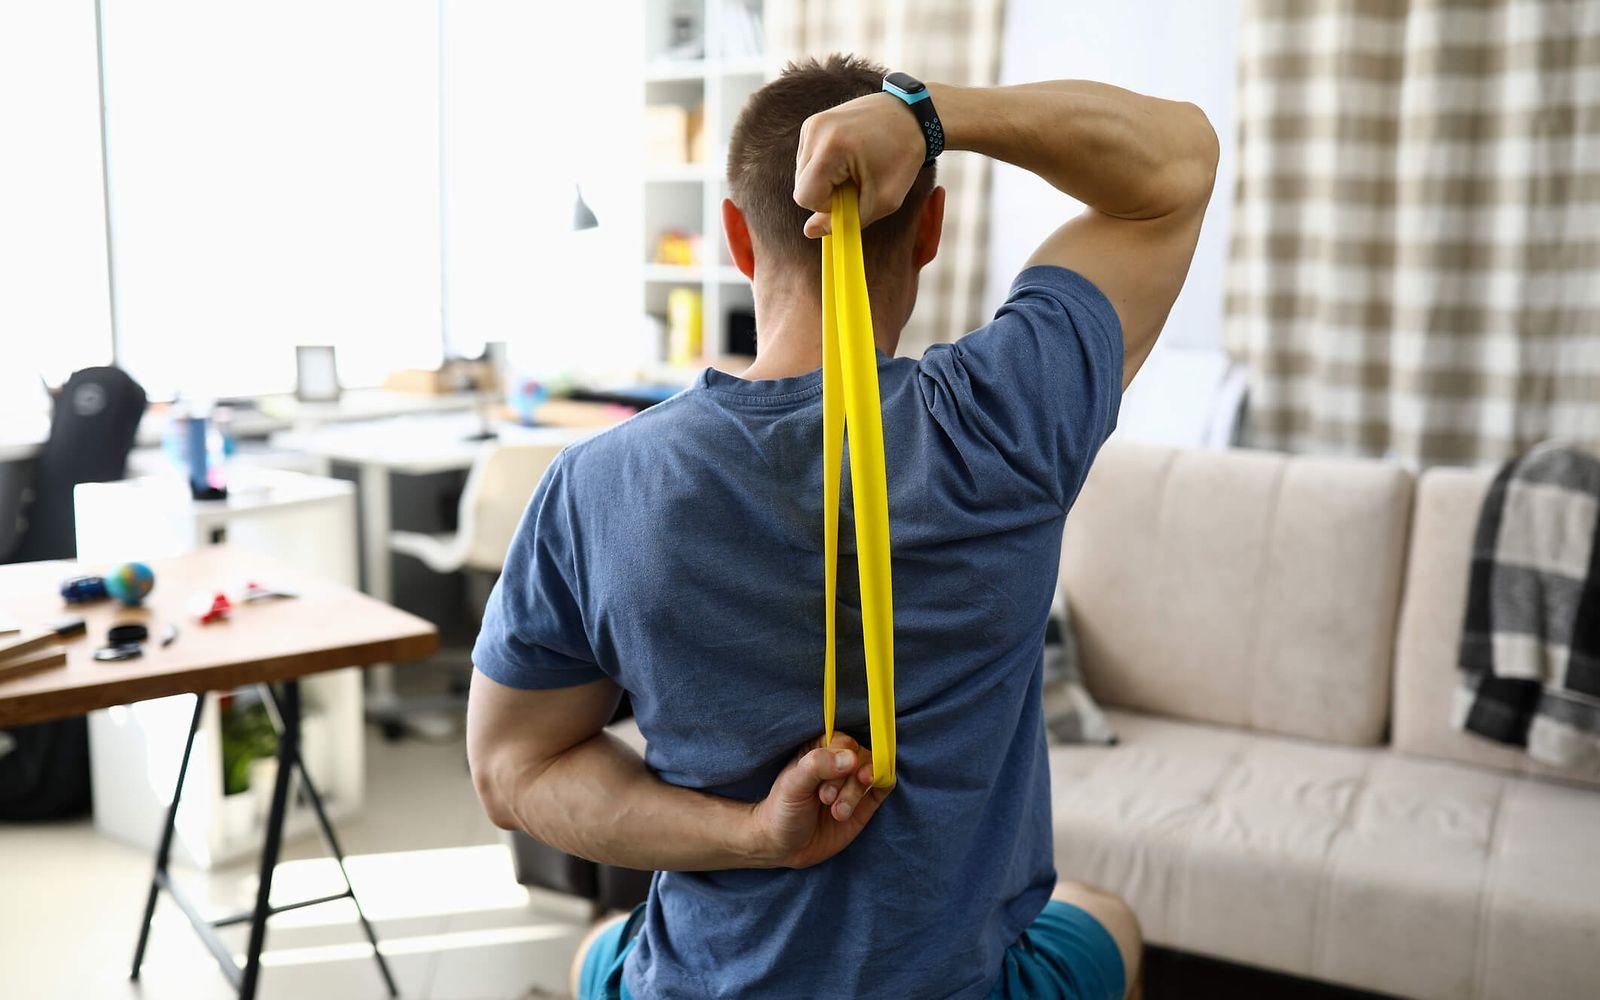 Bild: Online-Seminar Rückengesundheit: Mann benutzt gelbes Theraband hinter seinem Rücken.